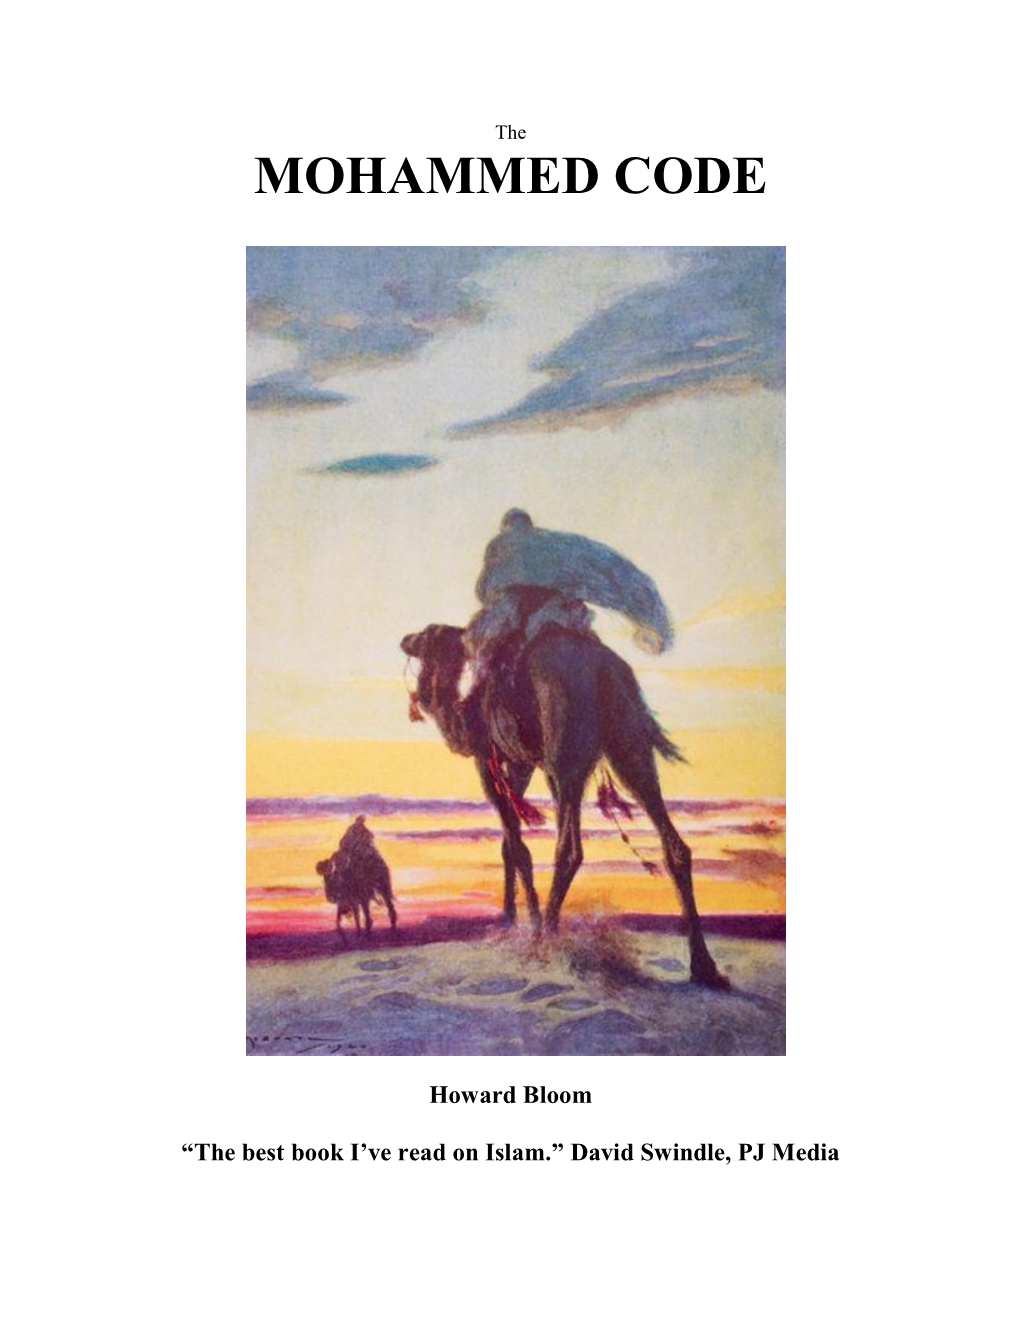 Mohammed Code